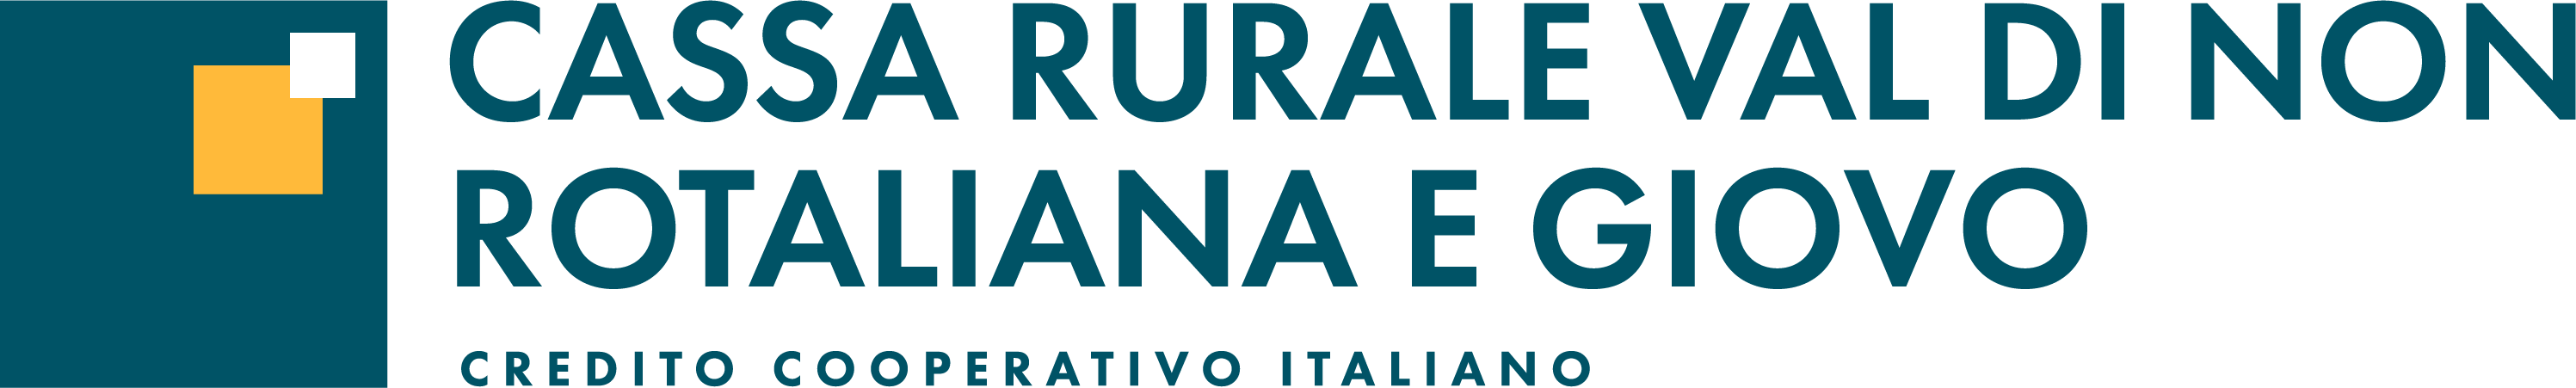 Logo Cassa Rurale Val di Non - Rotaliana e Giovo